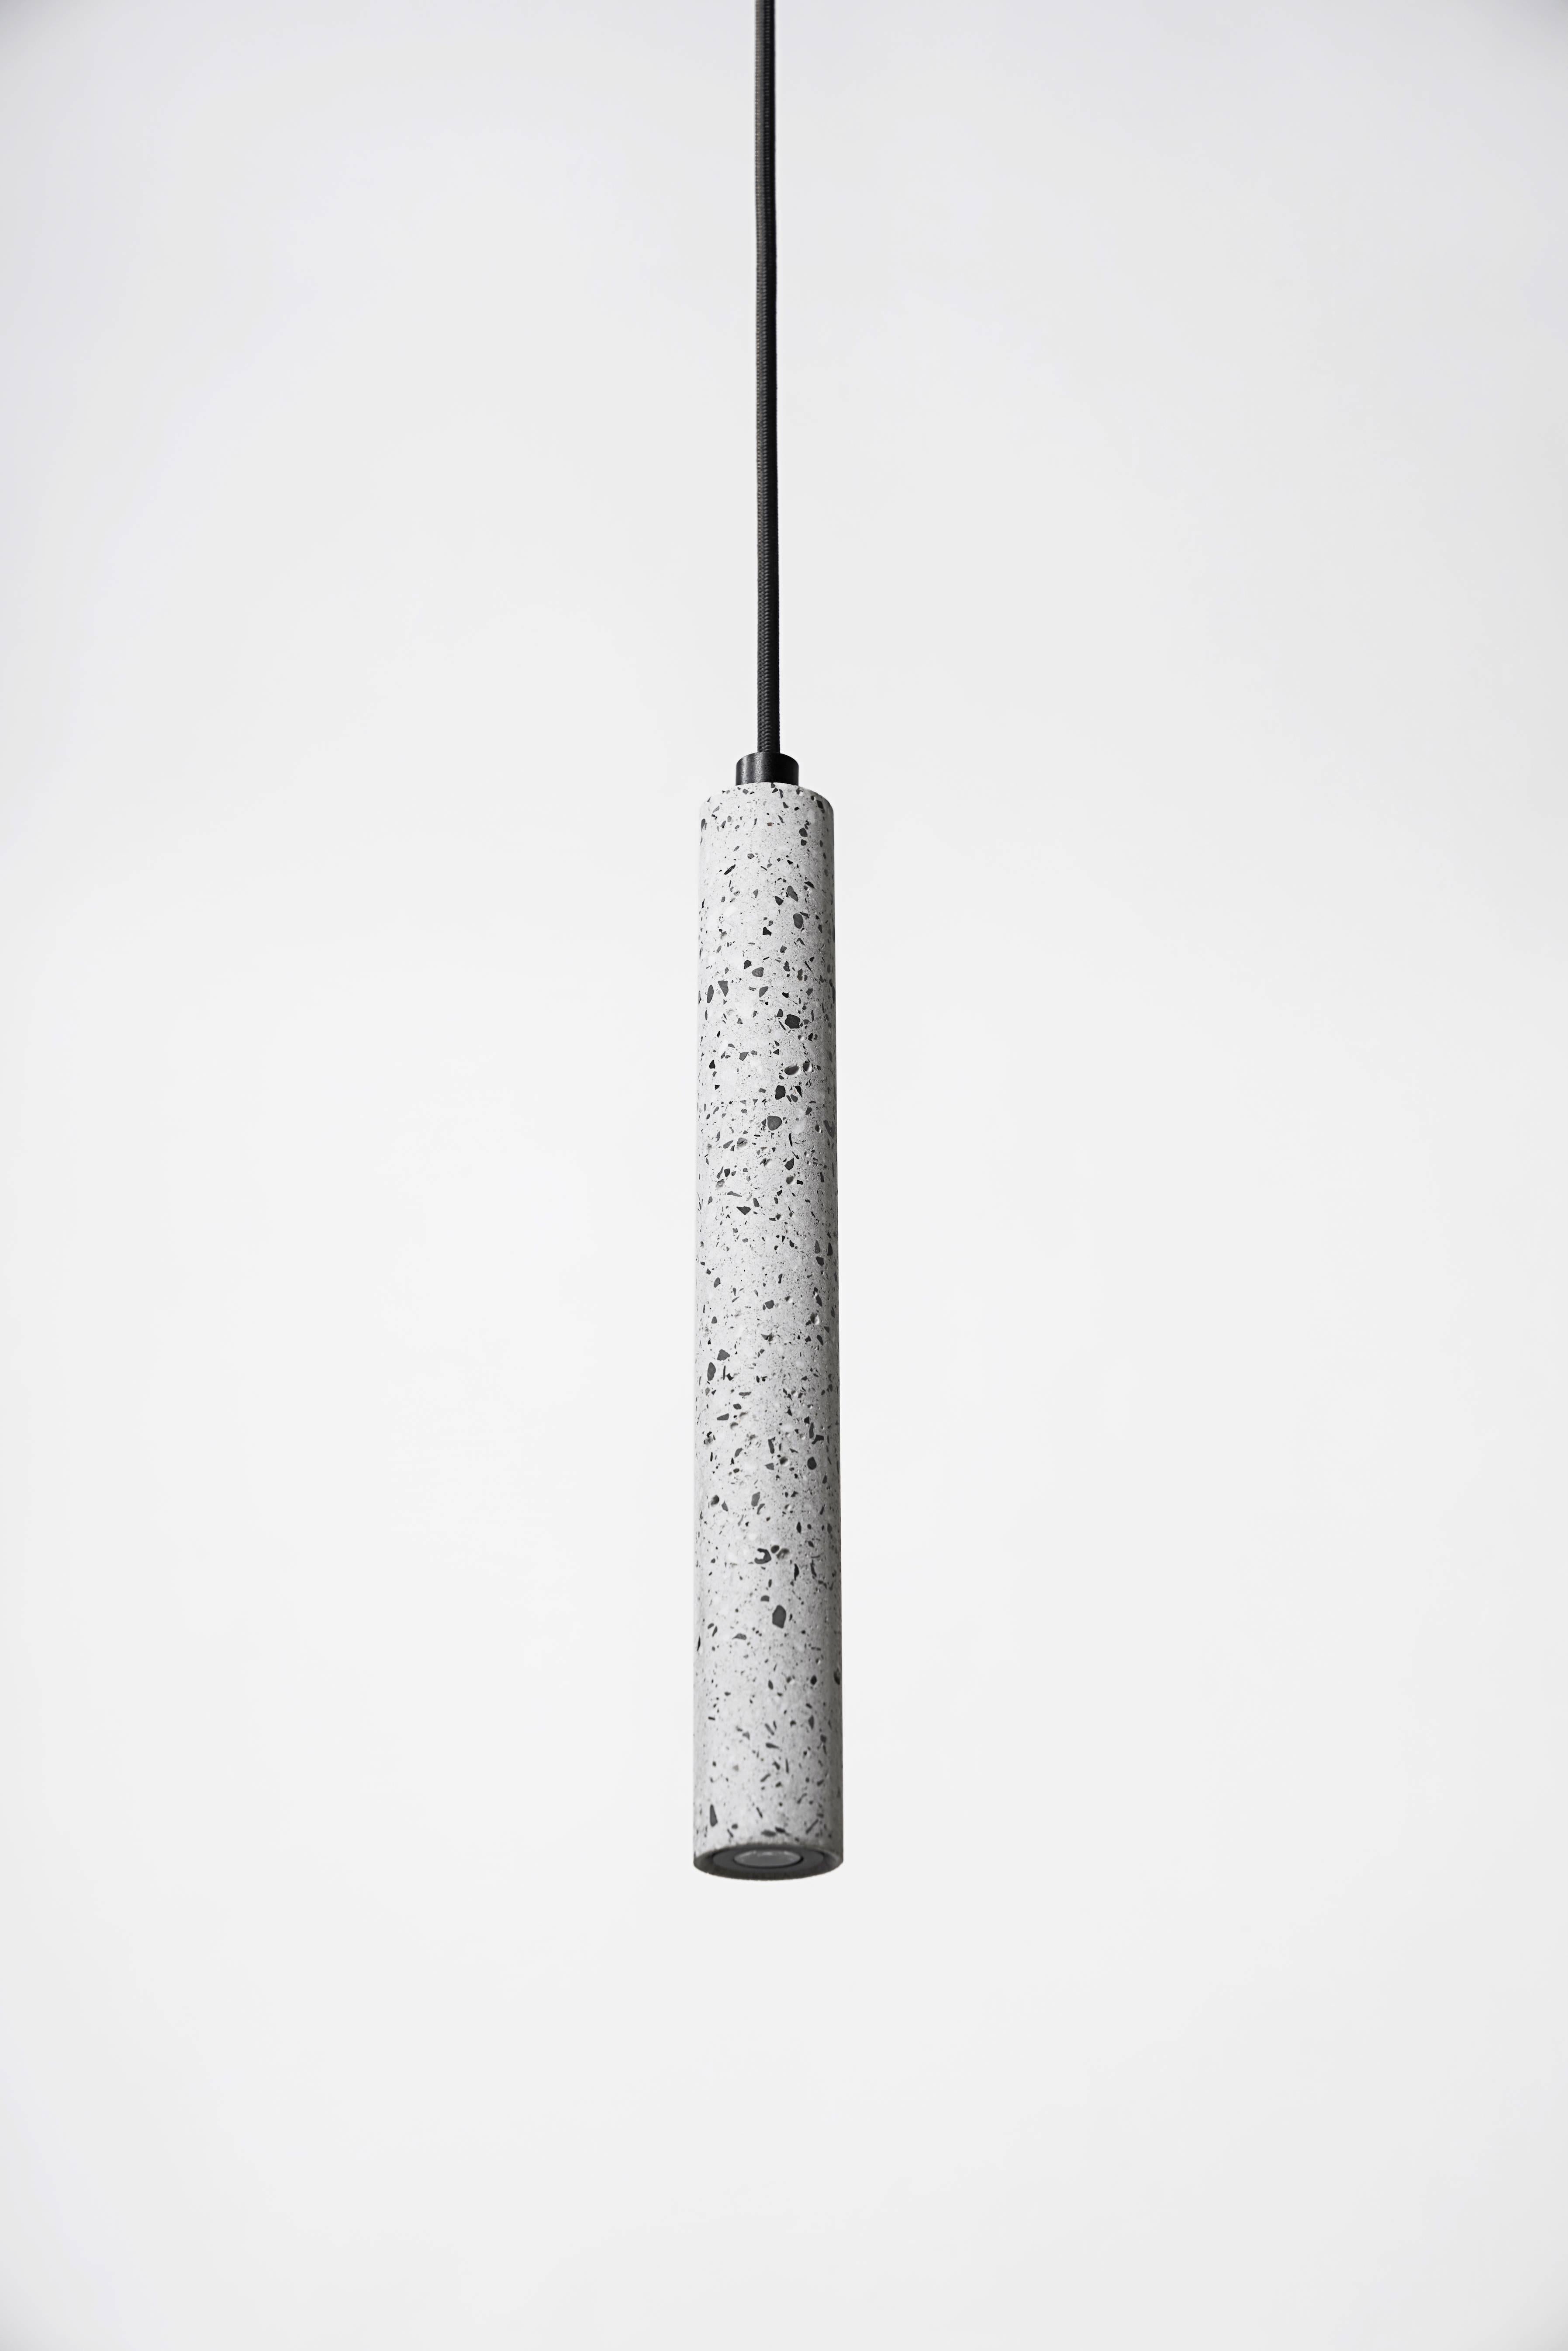 Plafonnier en terrazzo blanc et béton conçu par le studio cantonais Bentu Design.

(Vendu individuellement)
 
Mesures : 31 cm de haut ; 4 cm de diamètre
Fil : 2 mètres noir (réglable)
Type de lampe : G9 LED 1.5W.

Finition en laiton uniquement.

les